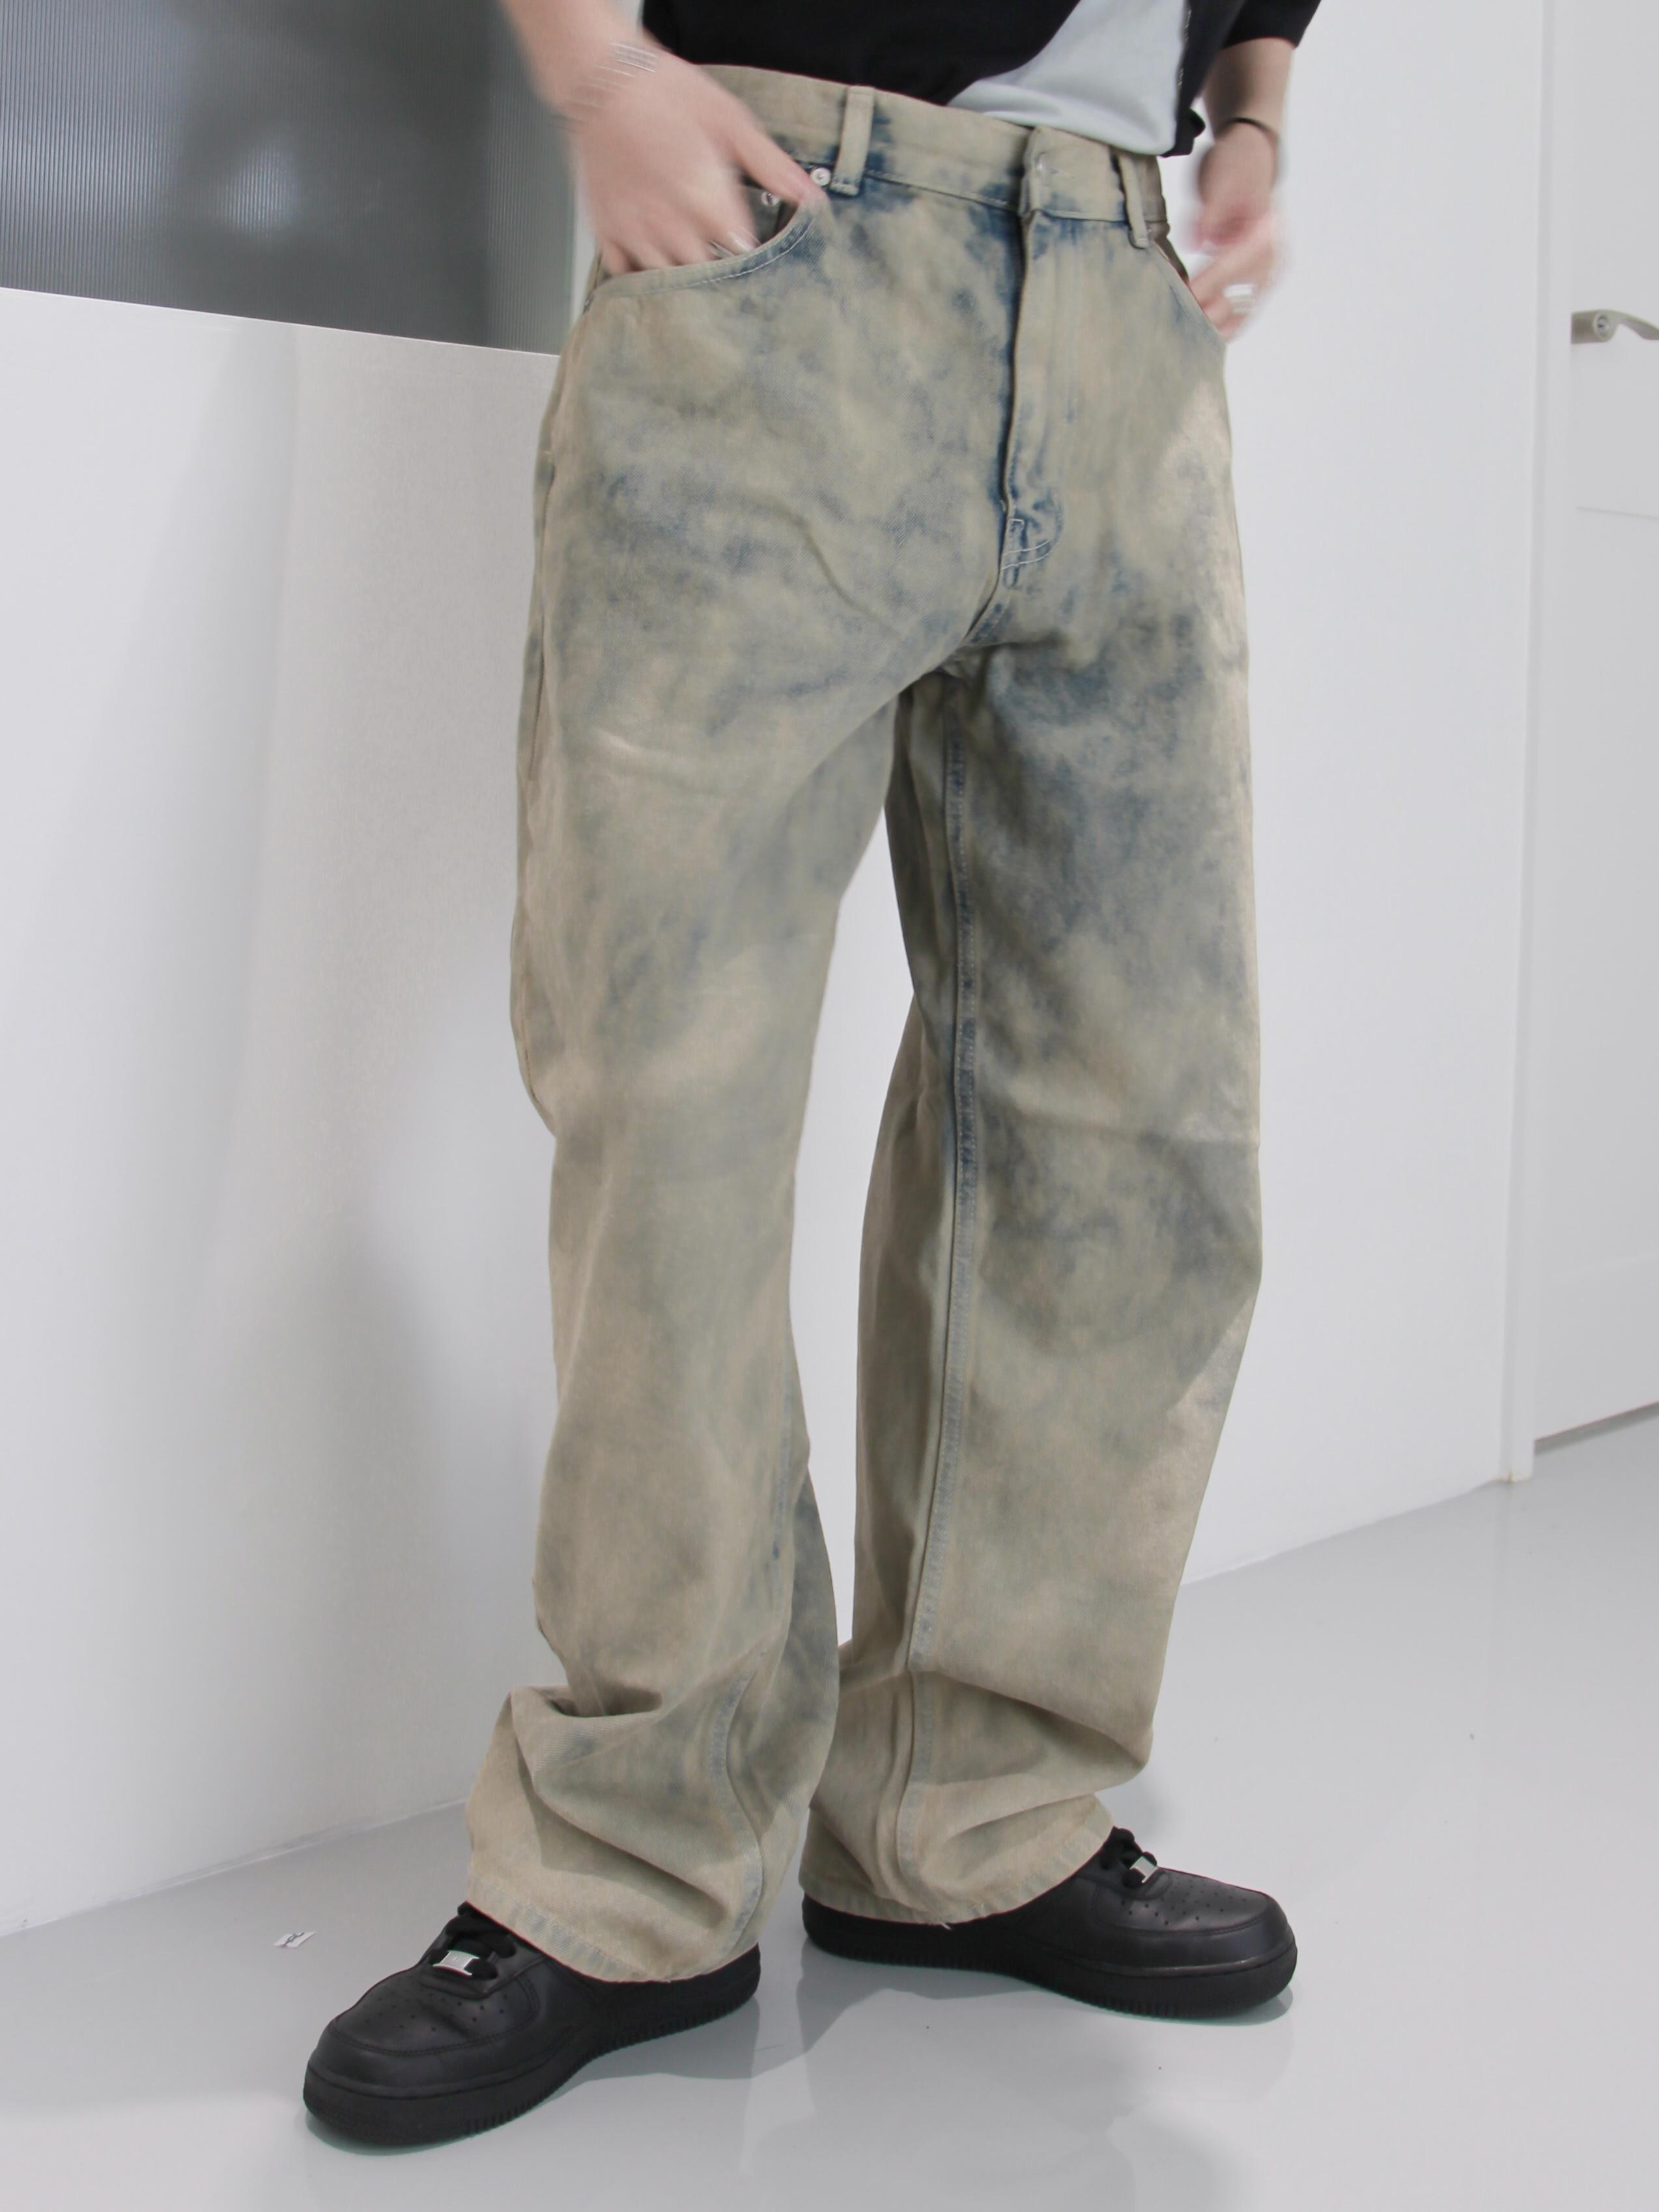 Korea 滑鐵盧復古刷舊寬鬆牛仔褲